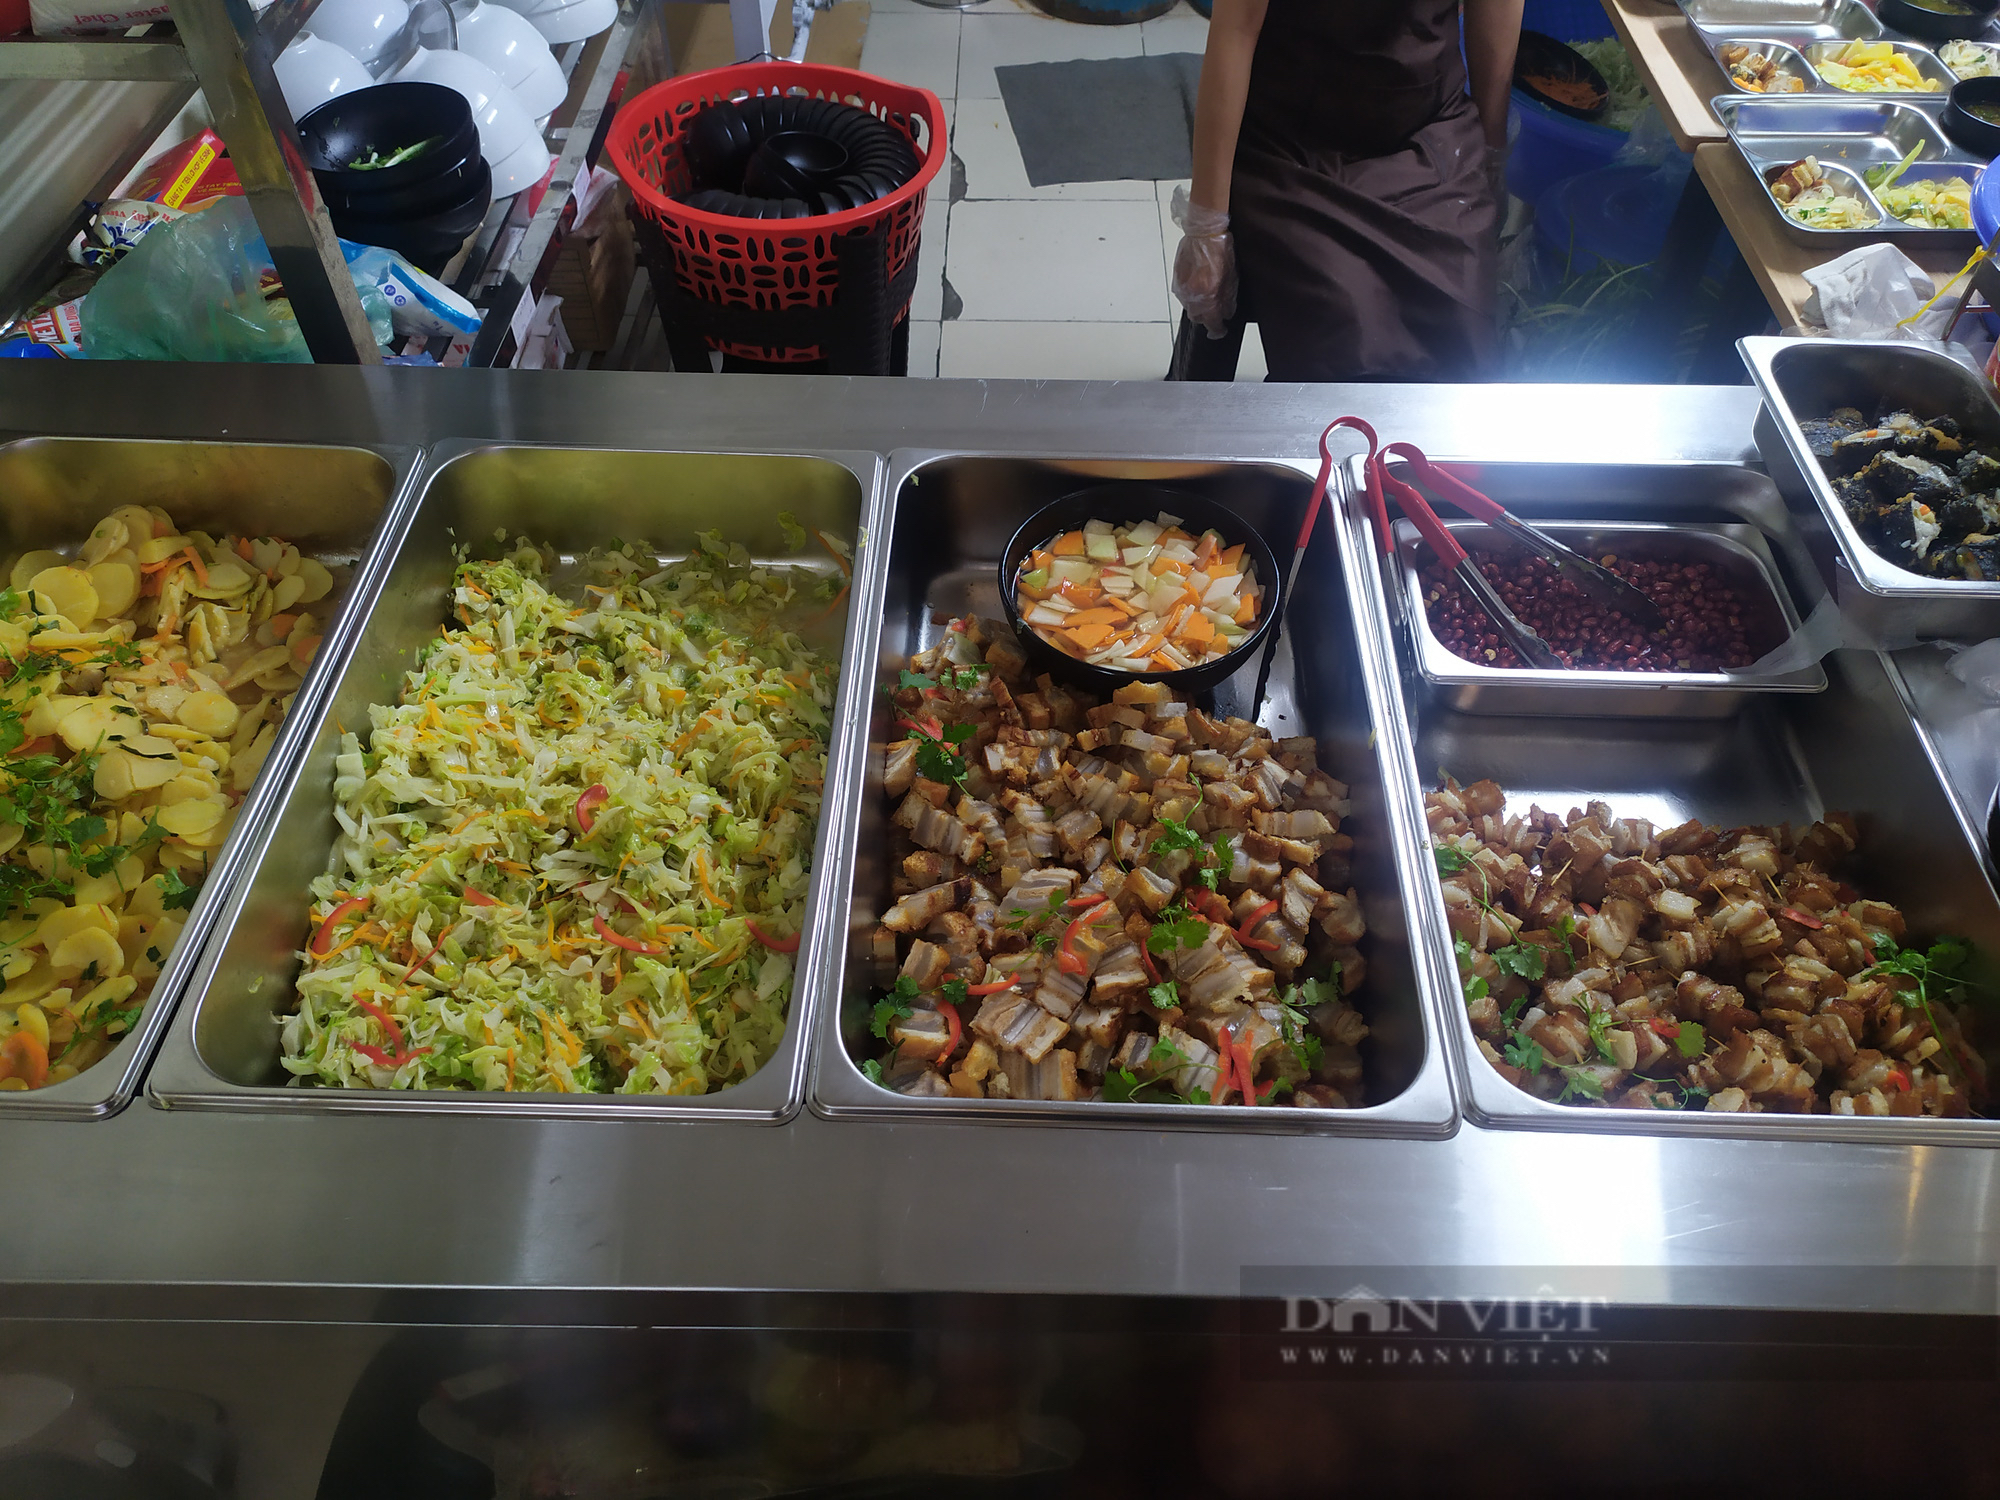 Quán chay 0 đồng phục vụ hàng trăm suất ăn mỗi ngày giữa lòng Thủ đô Hà Nội - Ảnh 4.